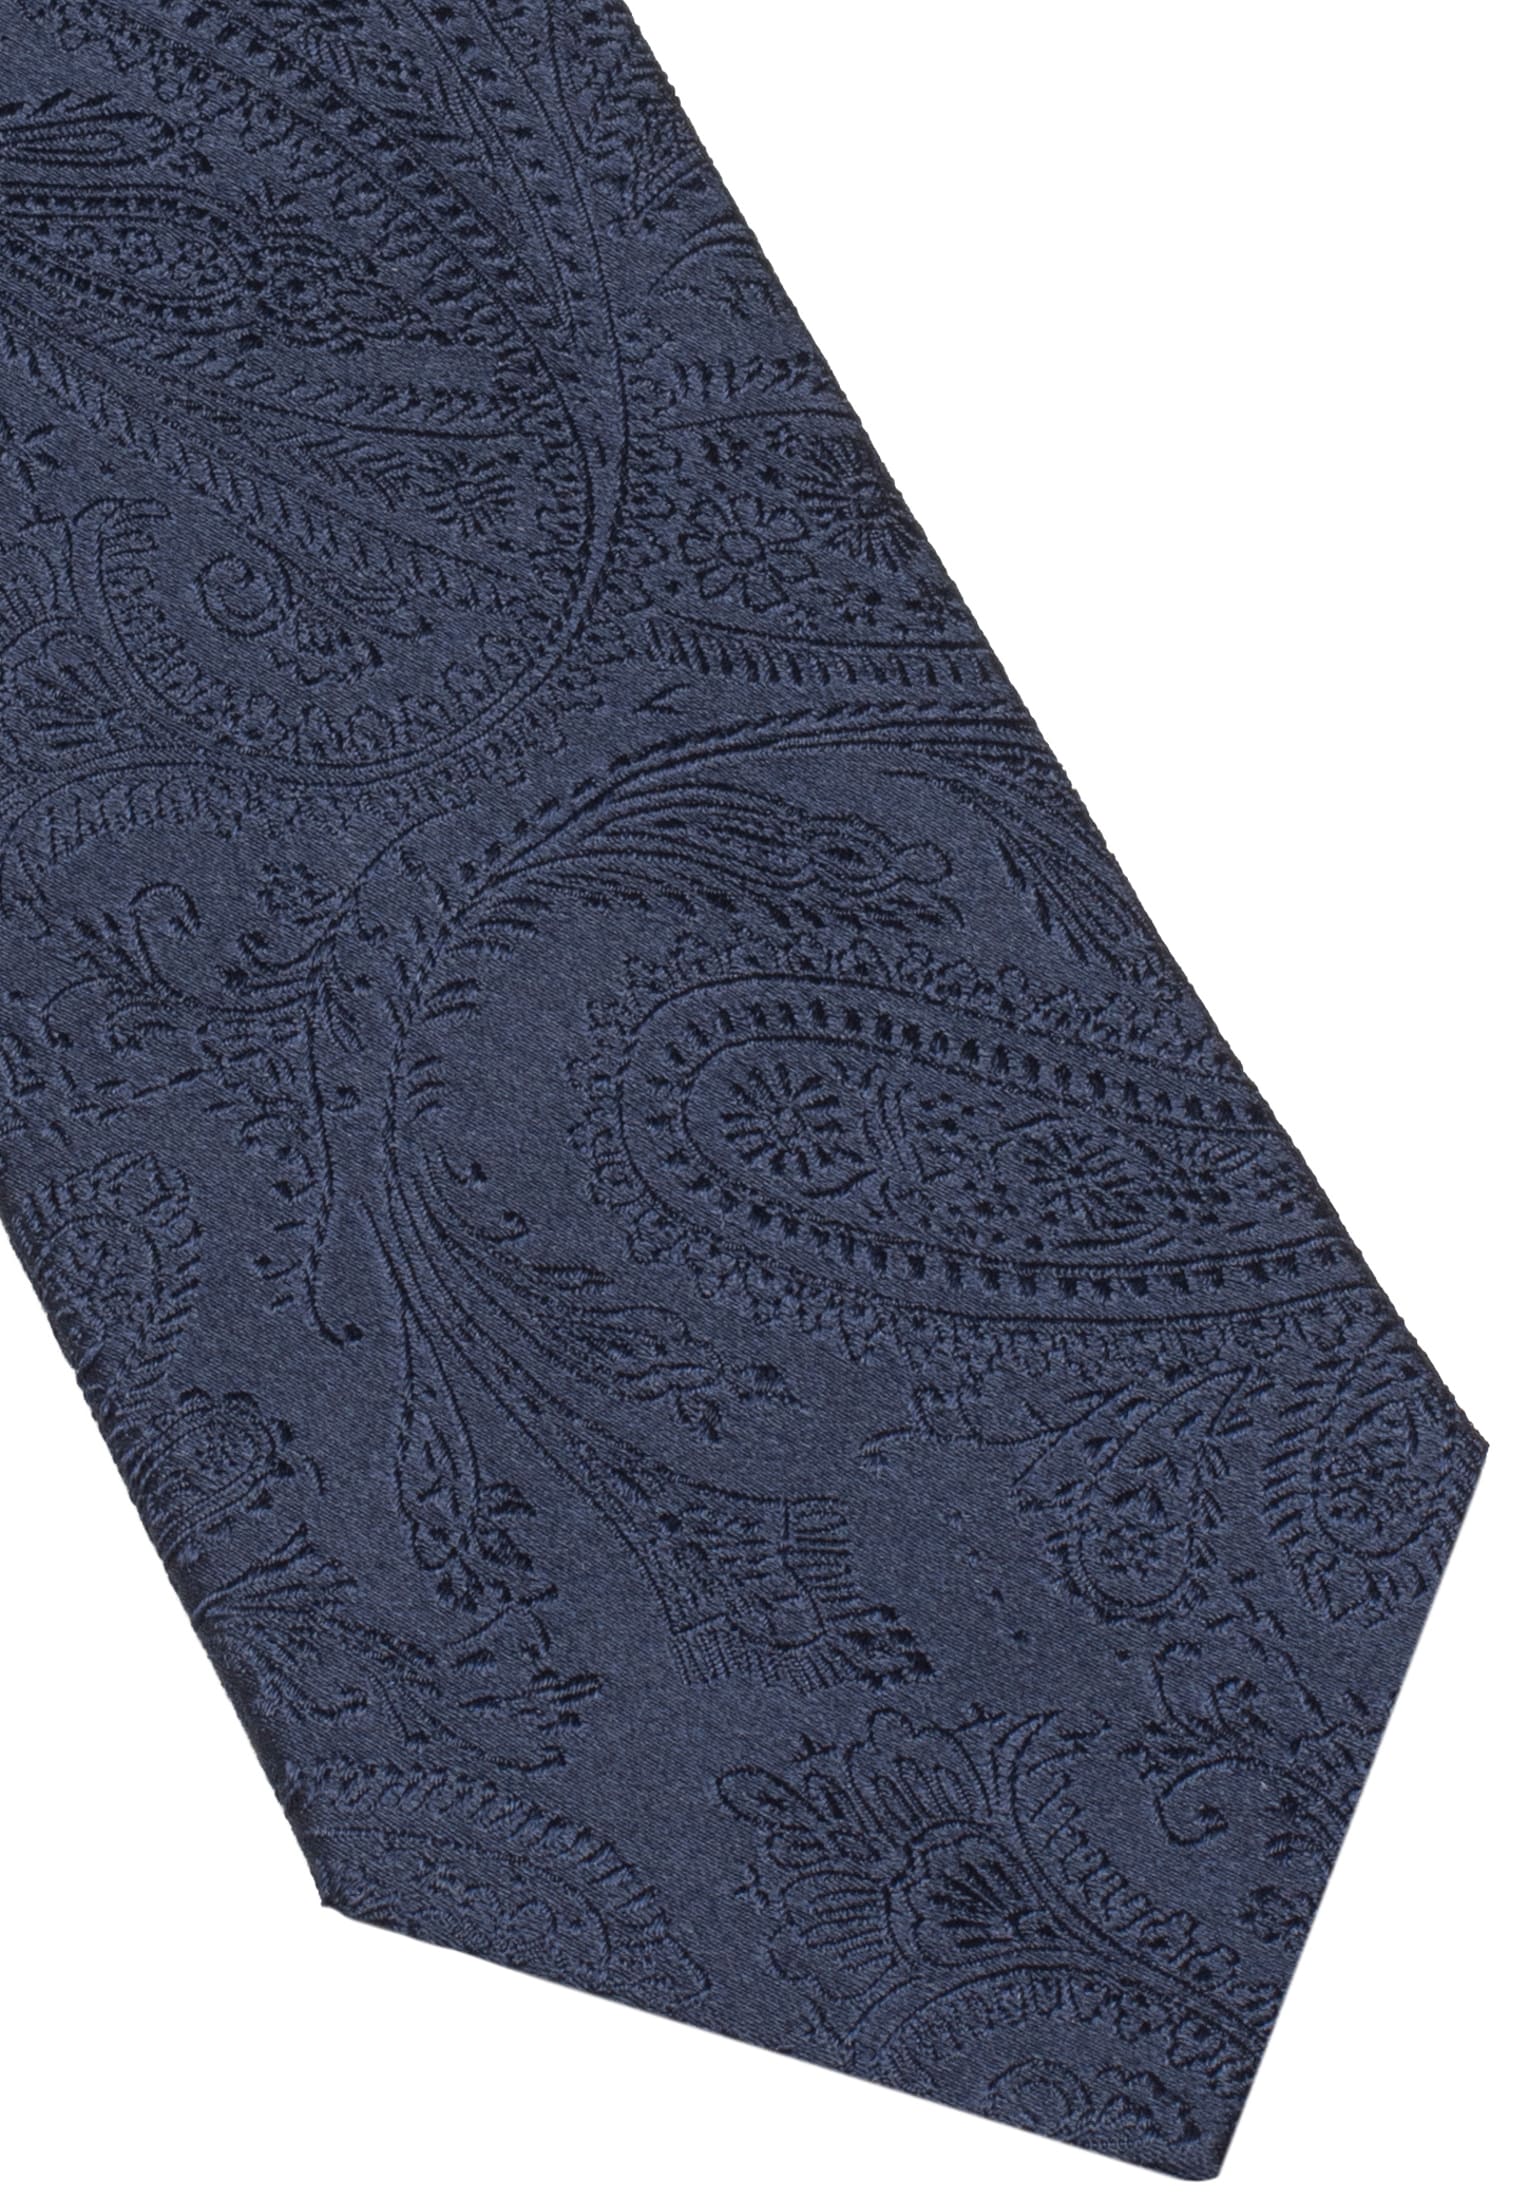 Cravate Bleu marine estampé